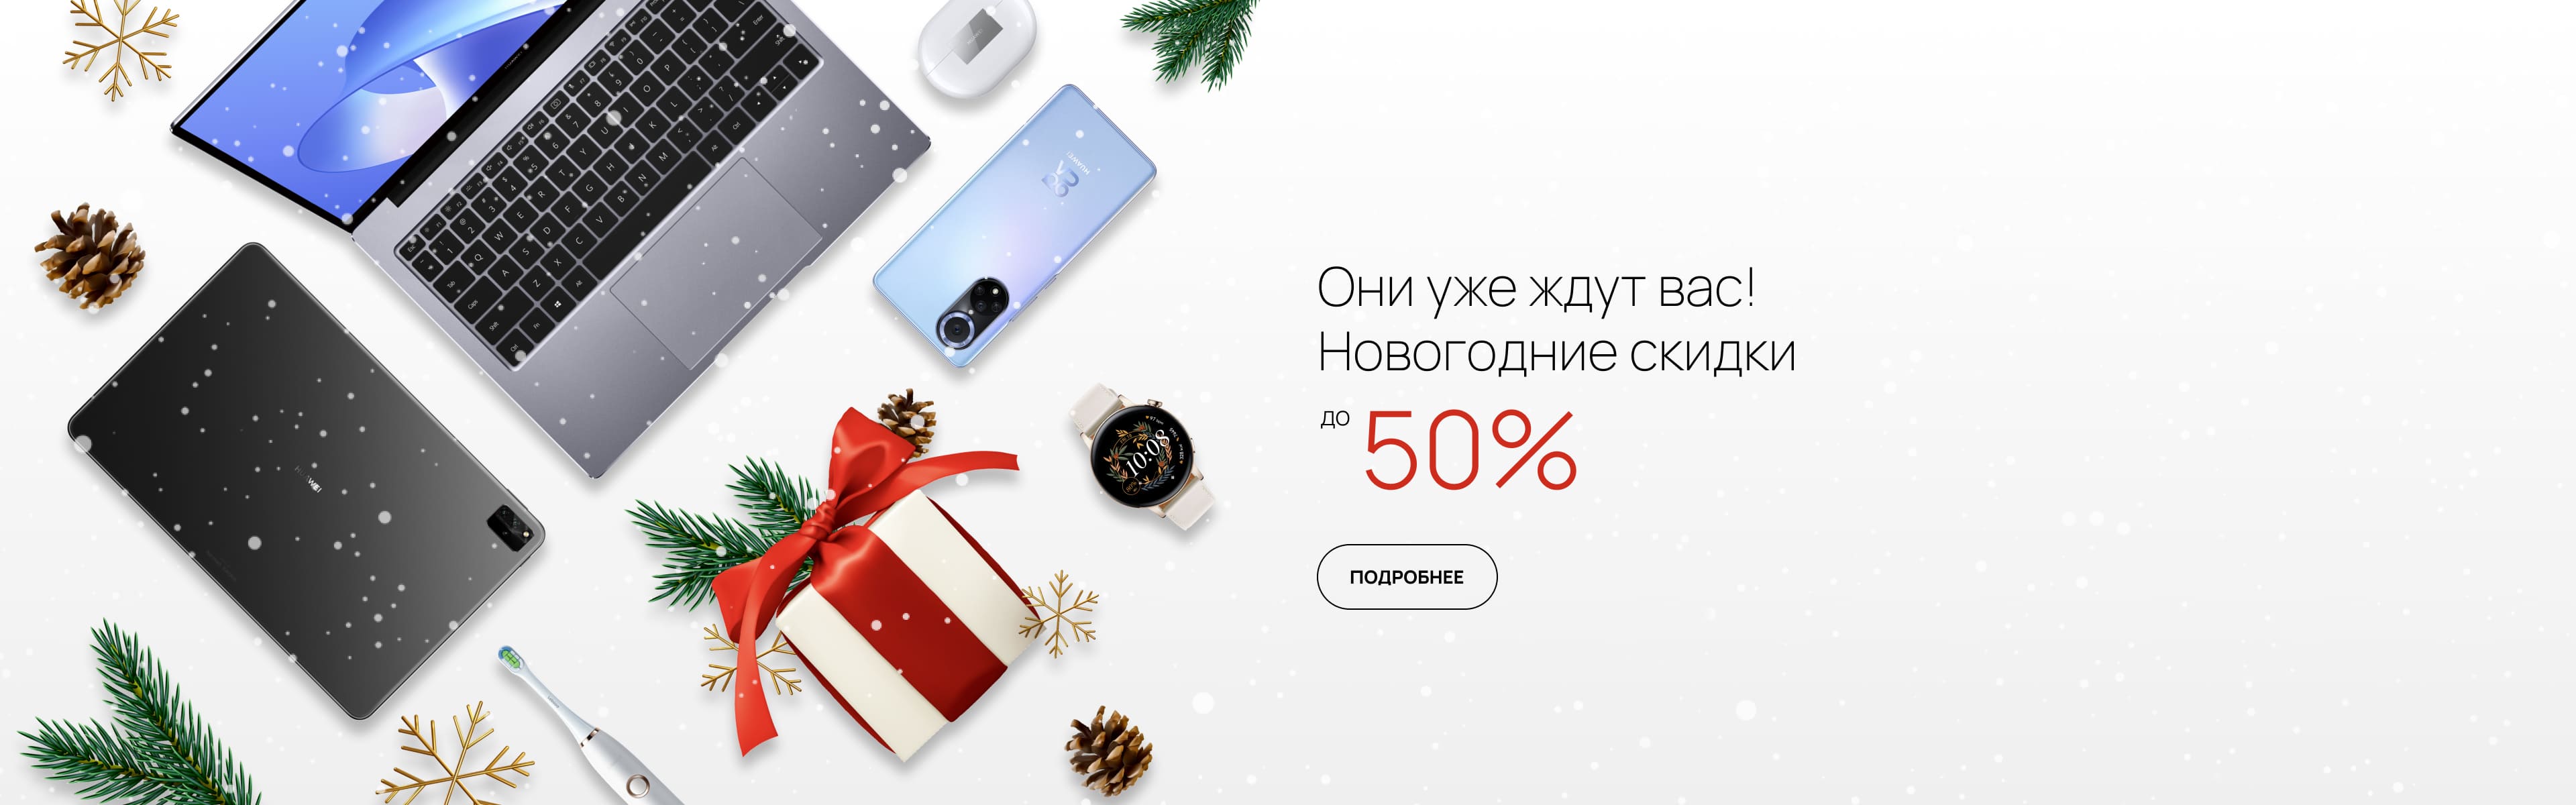 Промокод honor. Huawei промокод. Купоны на Хуавей в России на декабрь.